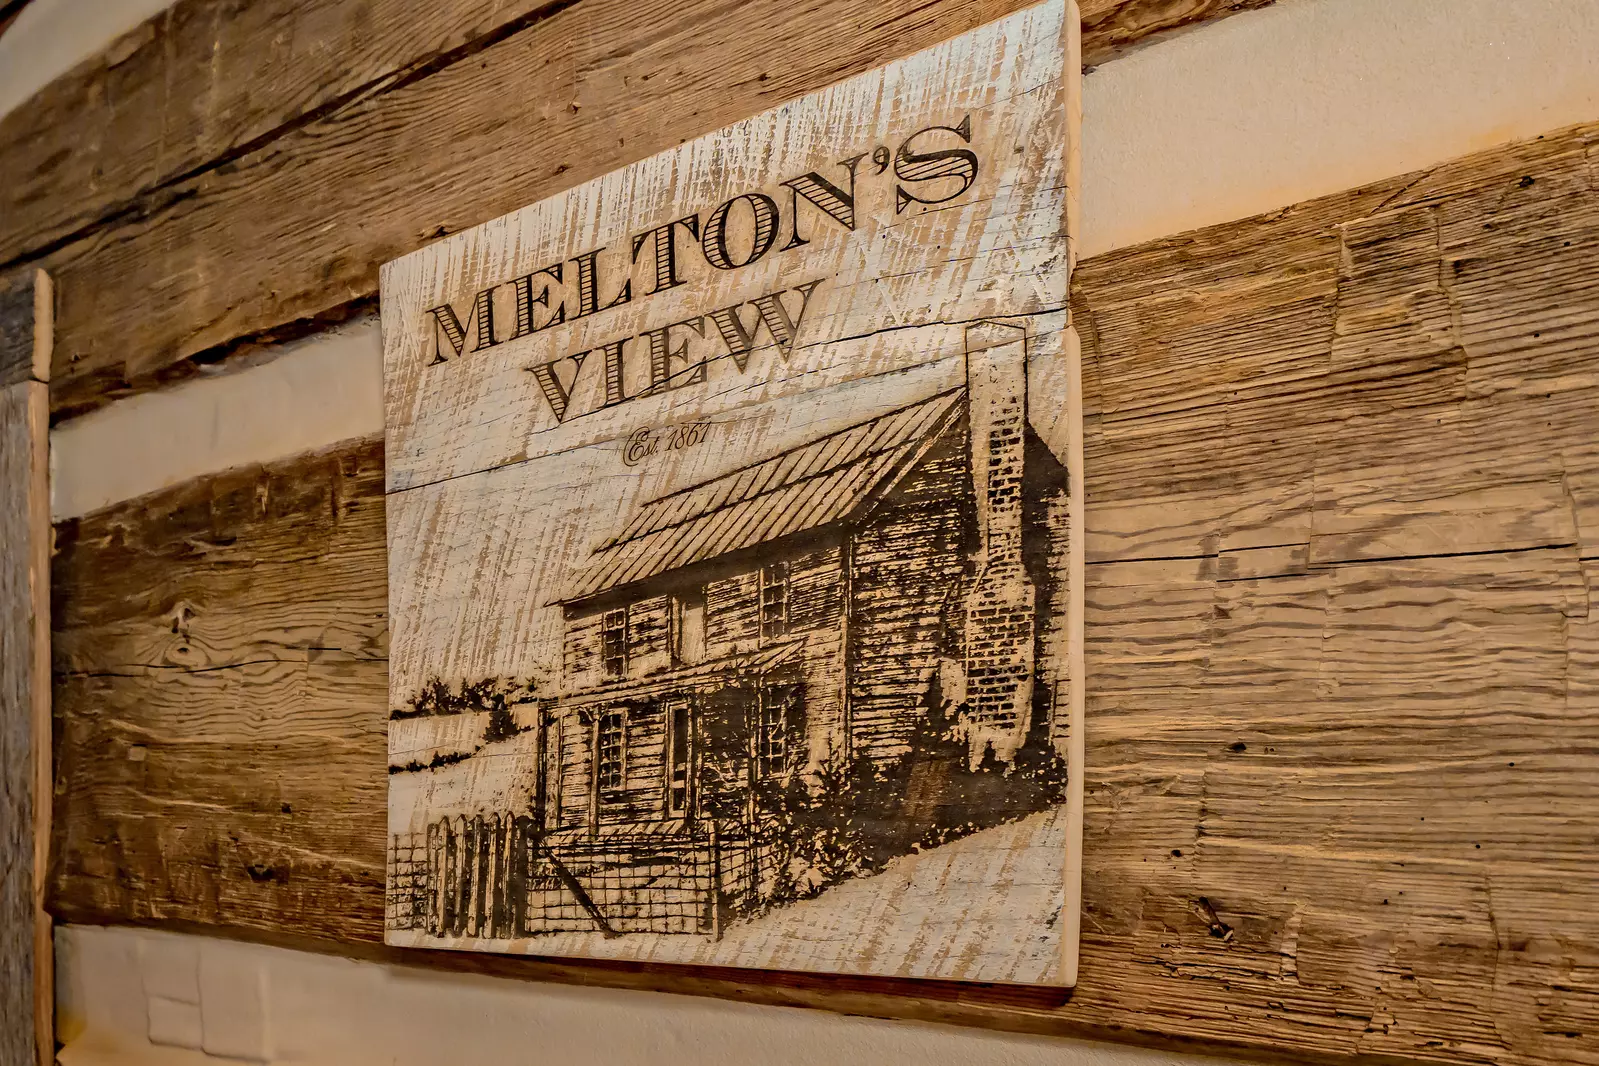 Melton's View